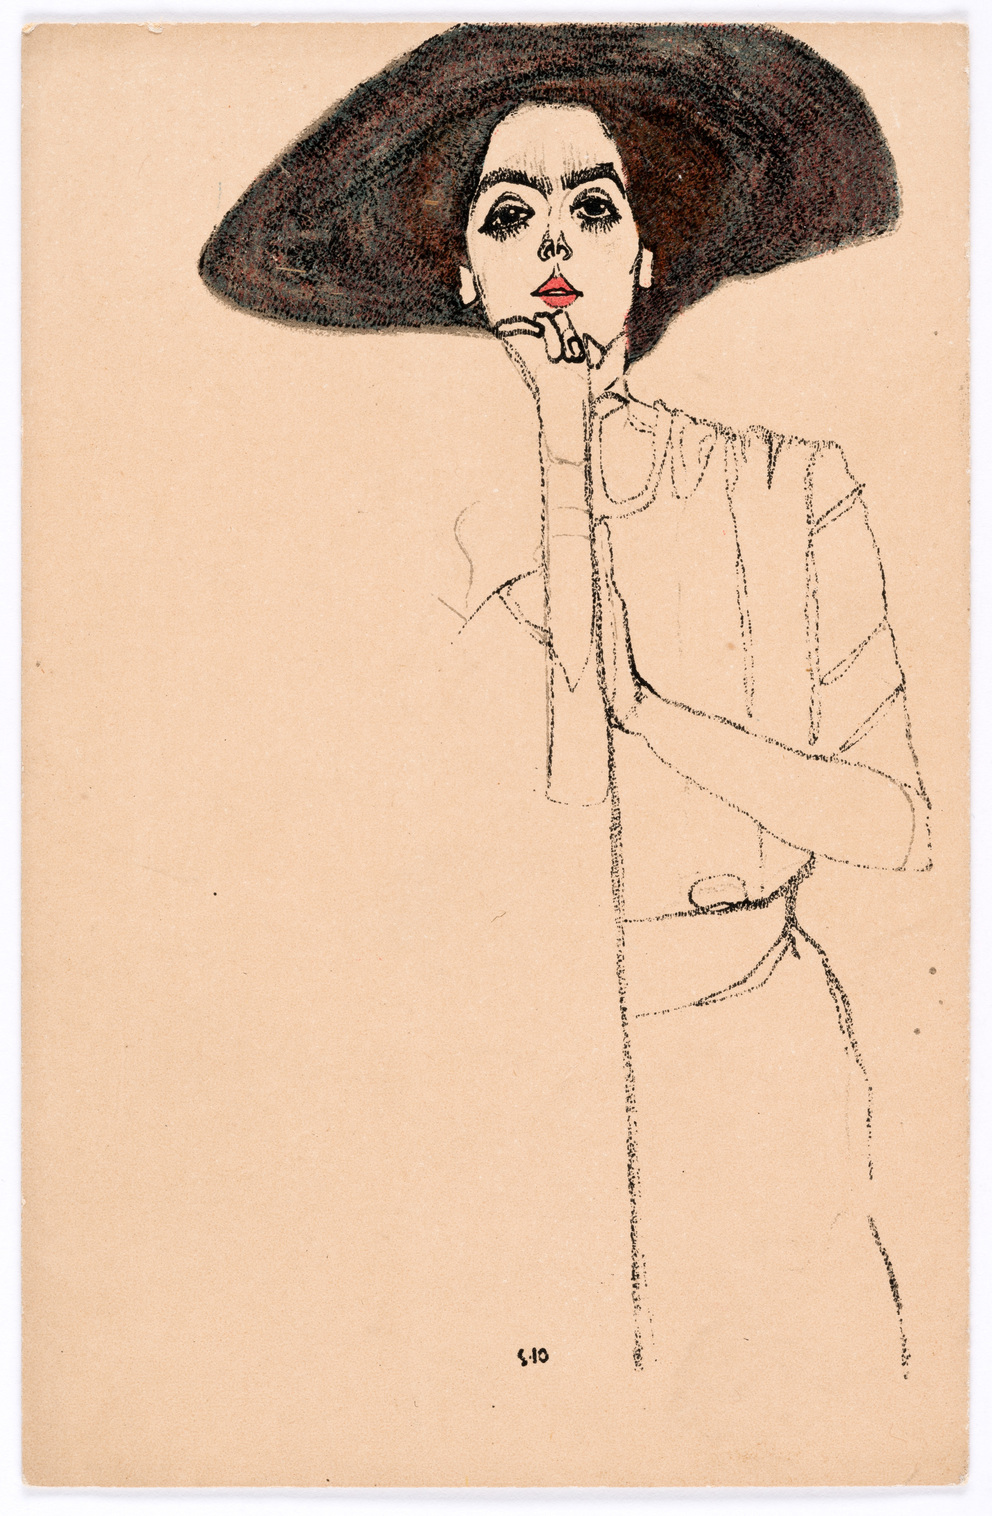 Wiener Werkstätte Postcard Nr. 290: Portrait of a Lady by Egon Schiele - 1910 - 14 × 9 cm Wien Museum